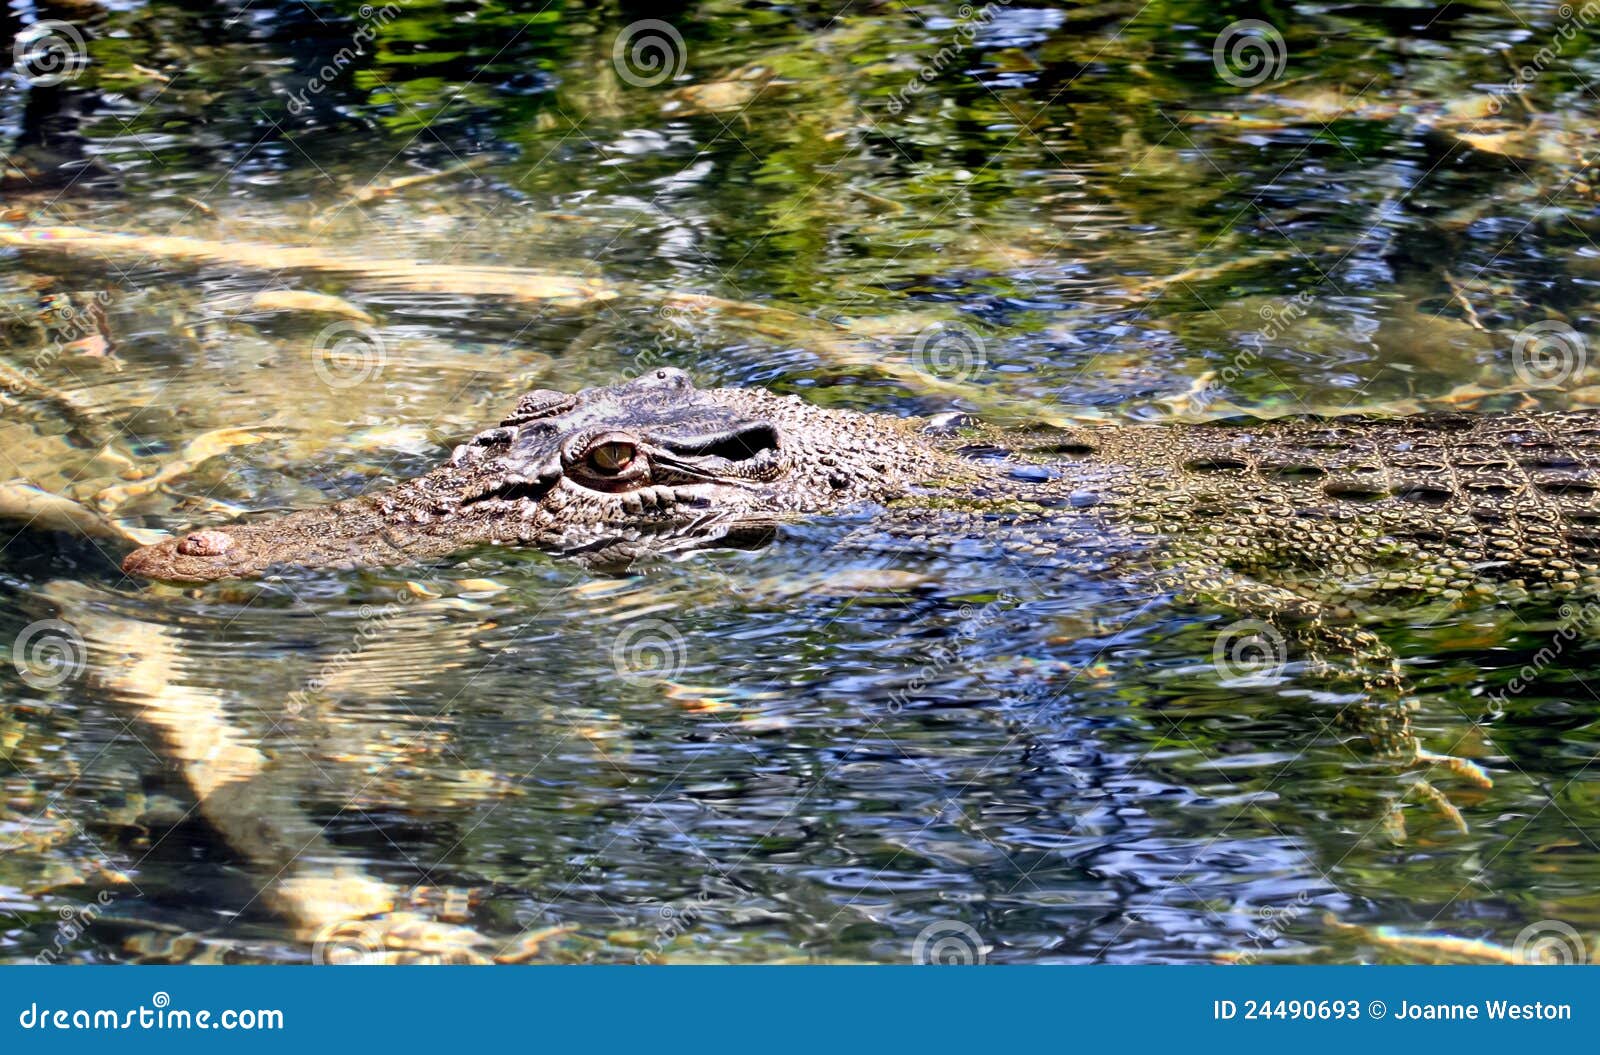 Крокодилы в соленой воде. Крокодил в воде. Крокодил лежит на воде. Крокодильчик лежит в воде.